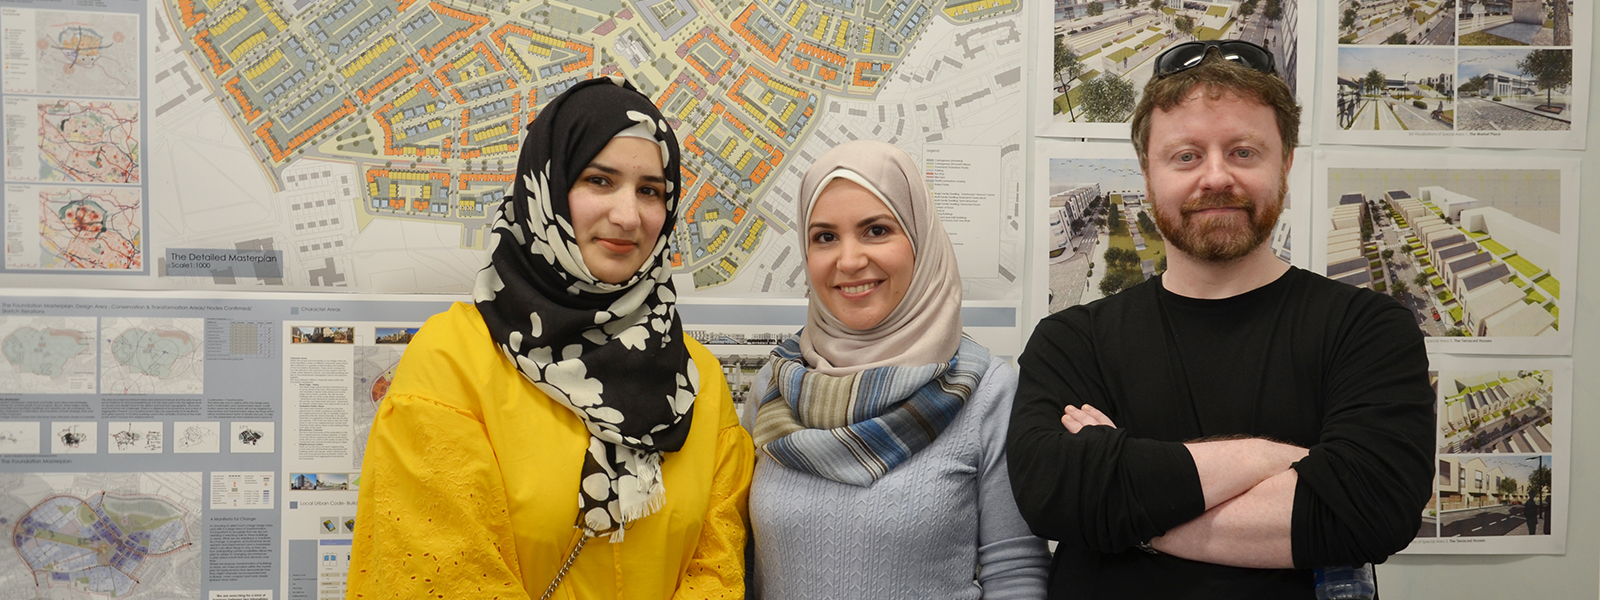 Rabail Akthar, Nour Kowatli and John Duffy, Urban Design (MSc) students